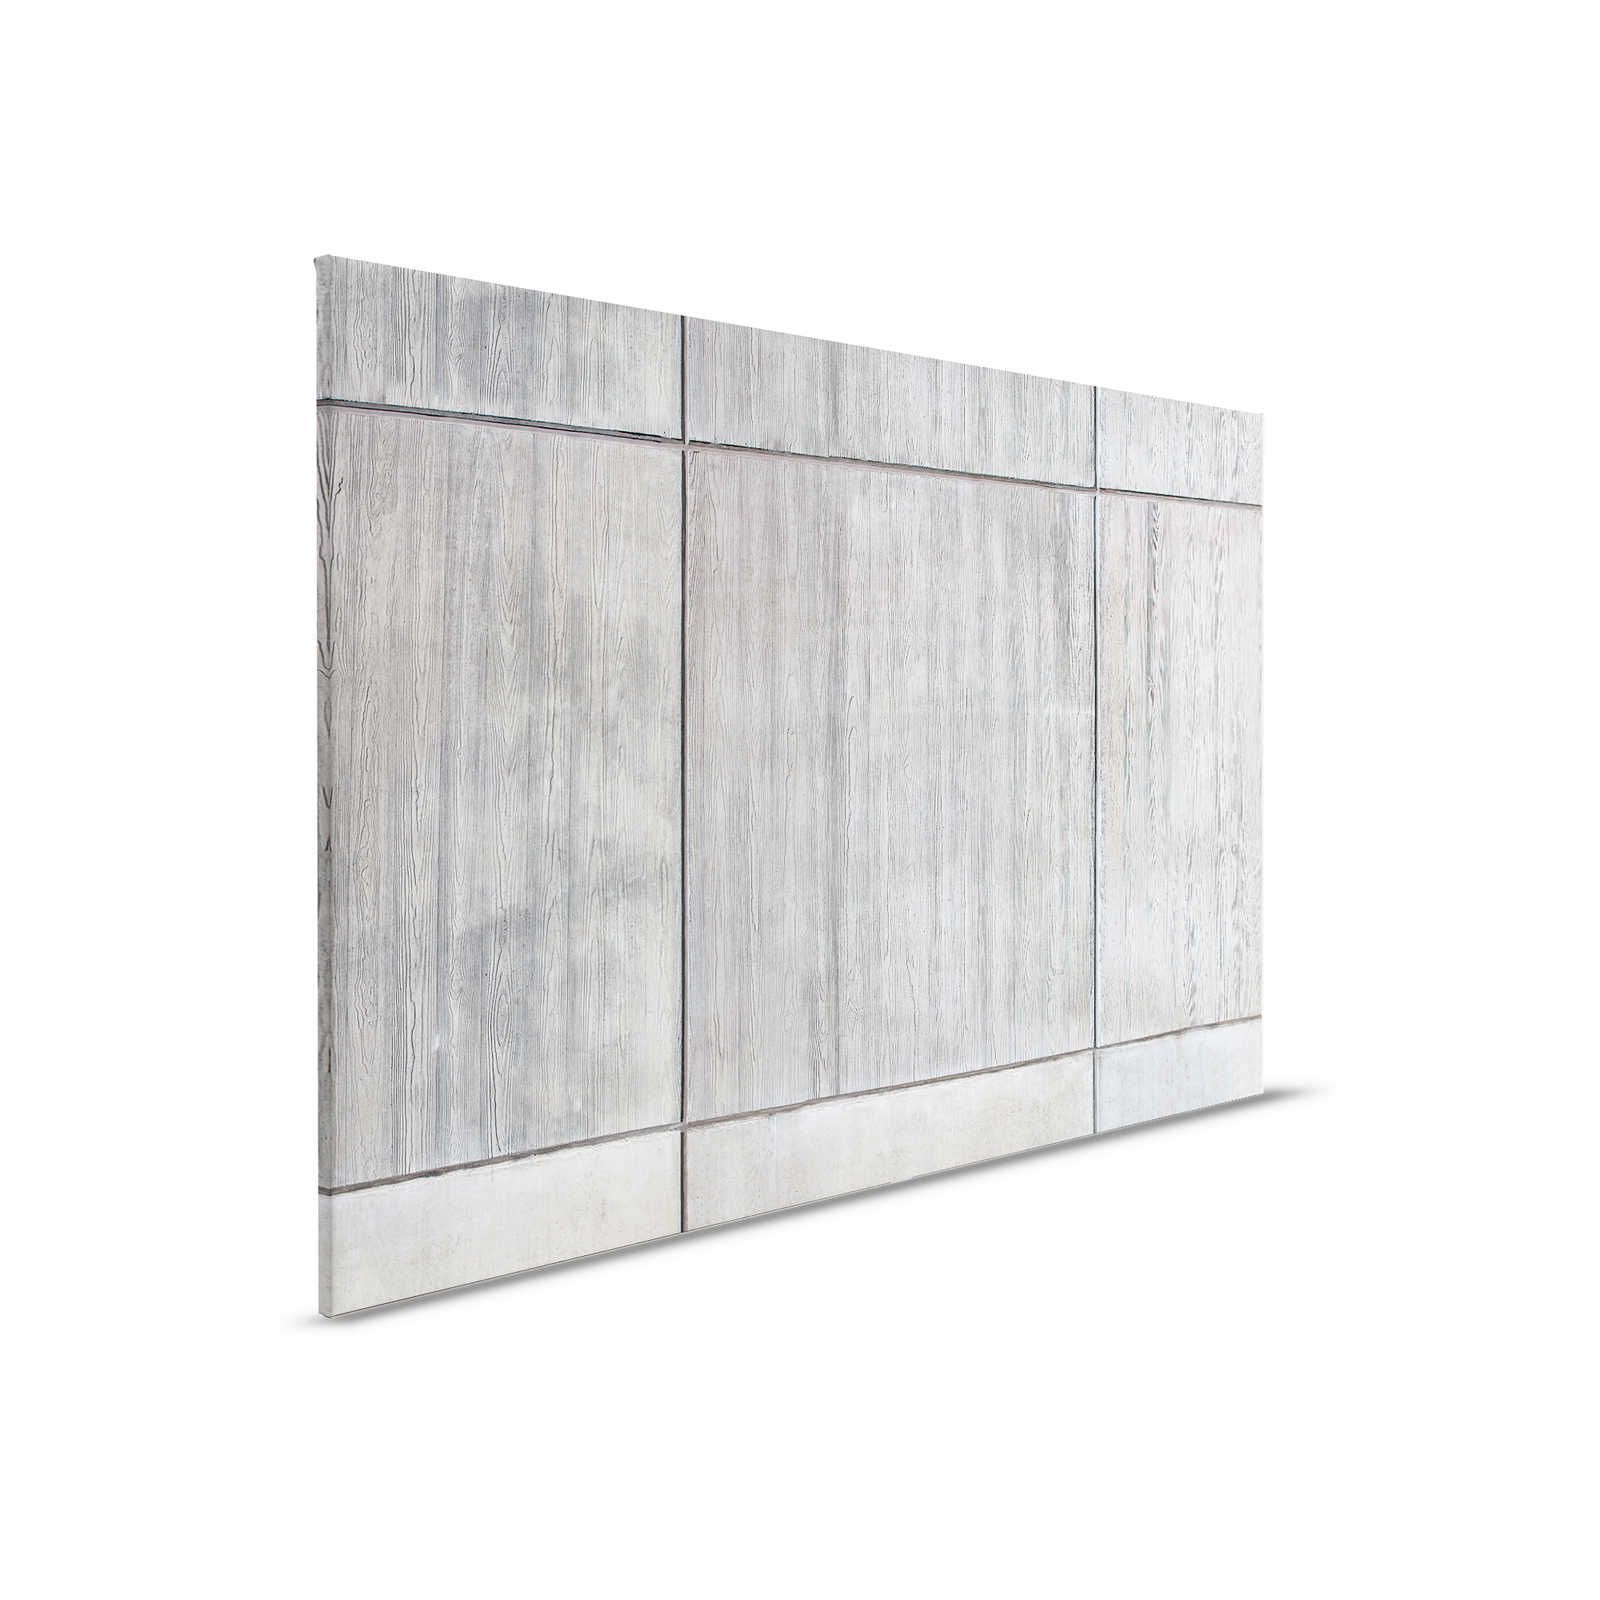         Betonplatten Leinwandbild mit Bretterschalung und Holzmaserung – 0,90 m x 0,60 m
    